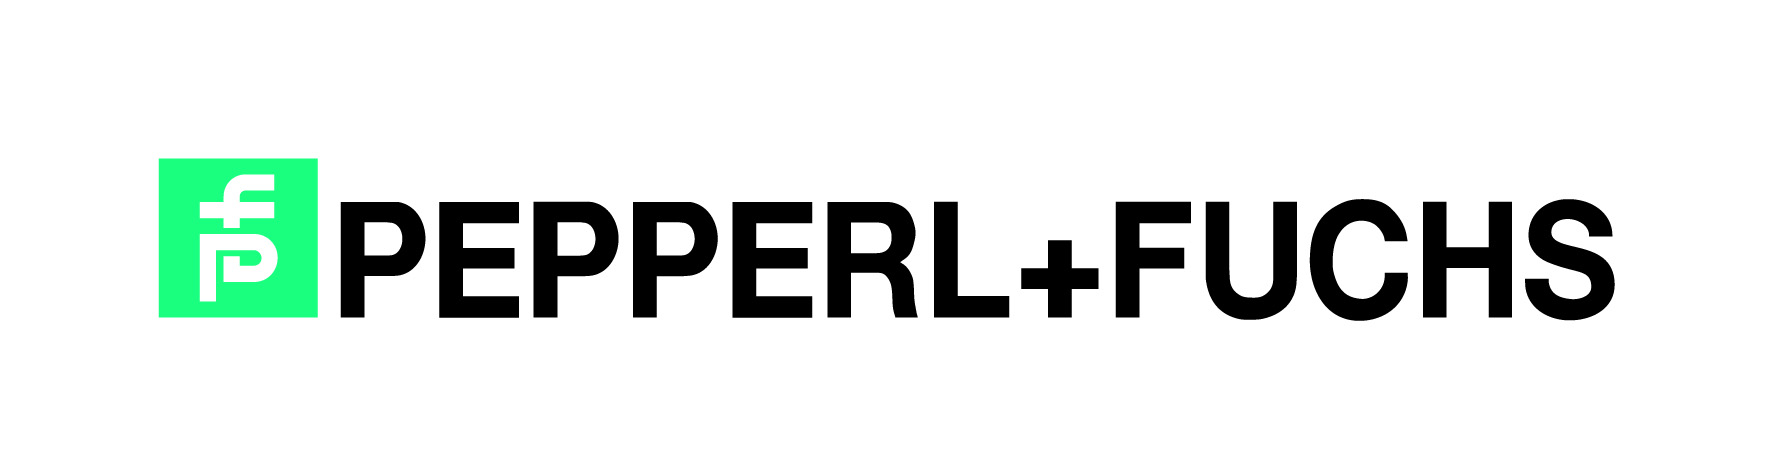 (Logo: Pepperl+Fuchs)